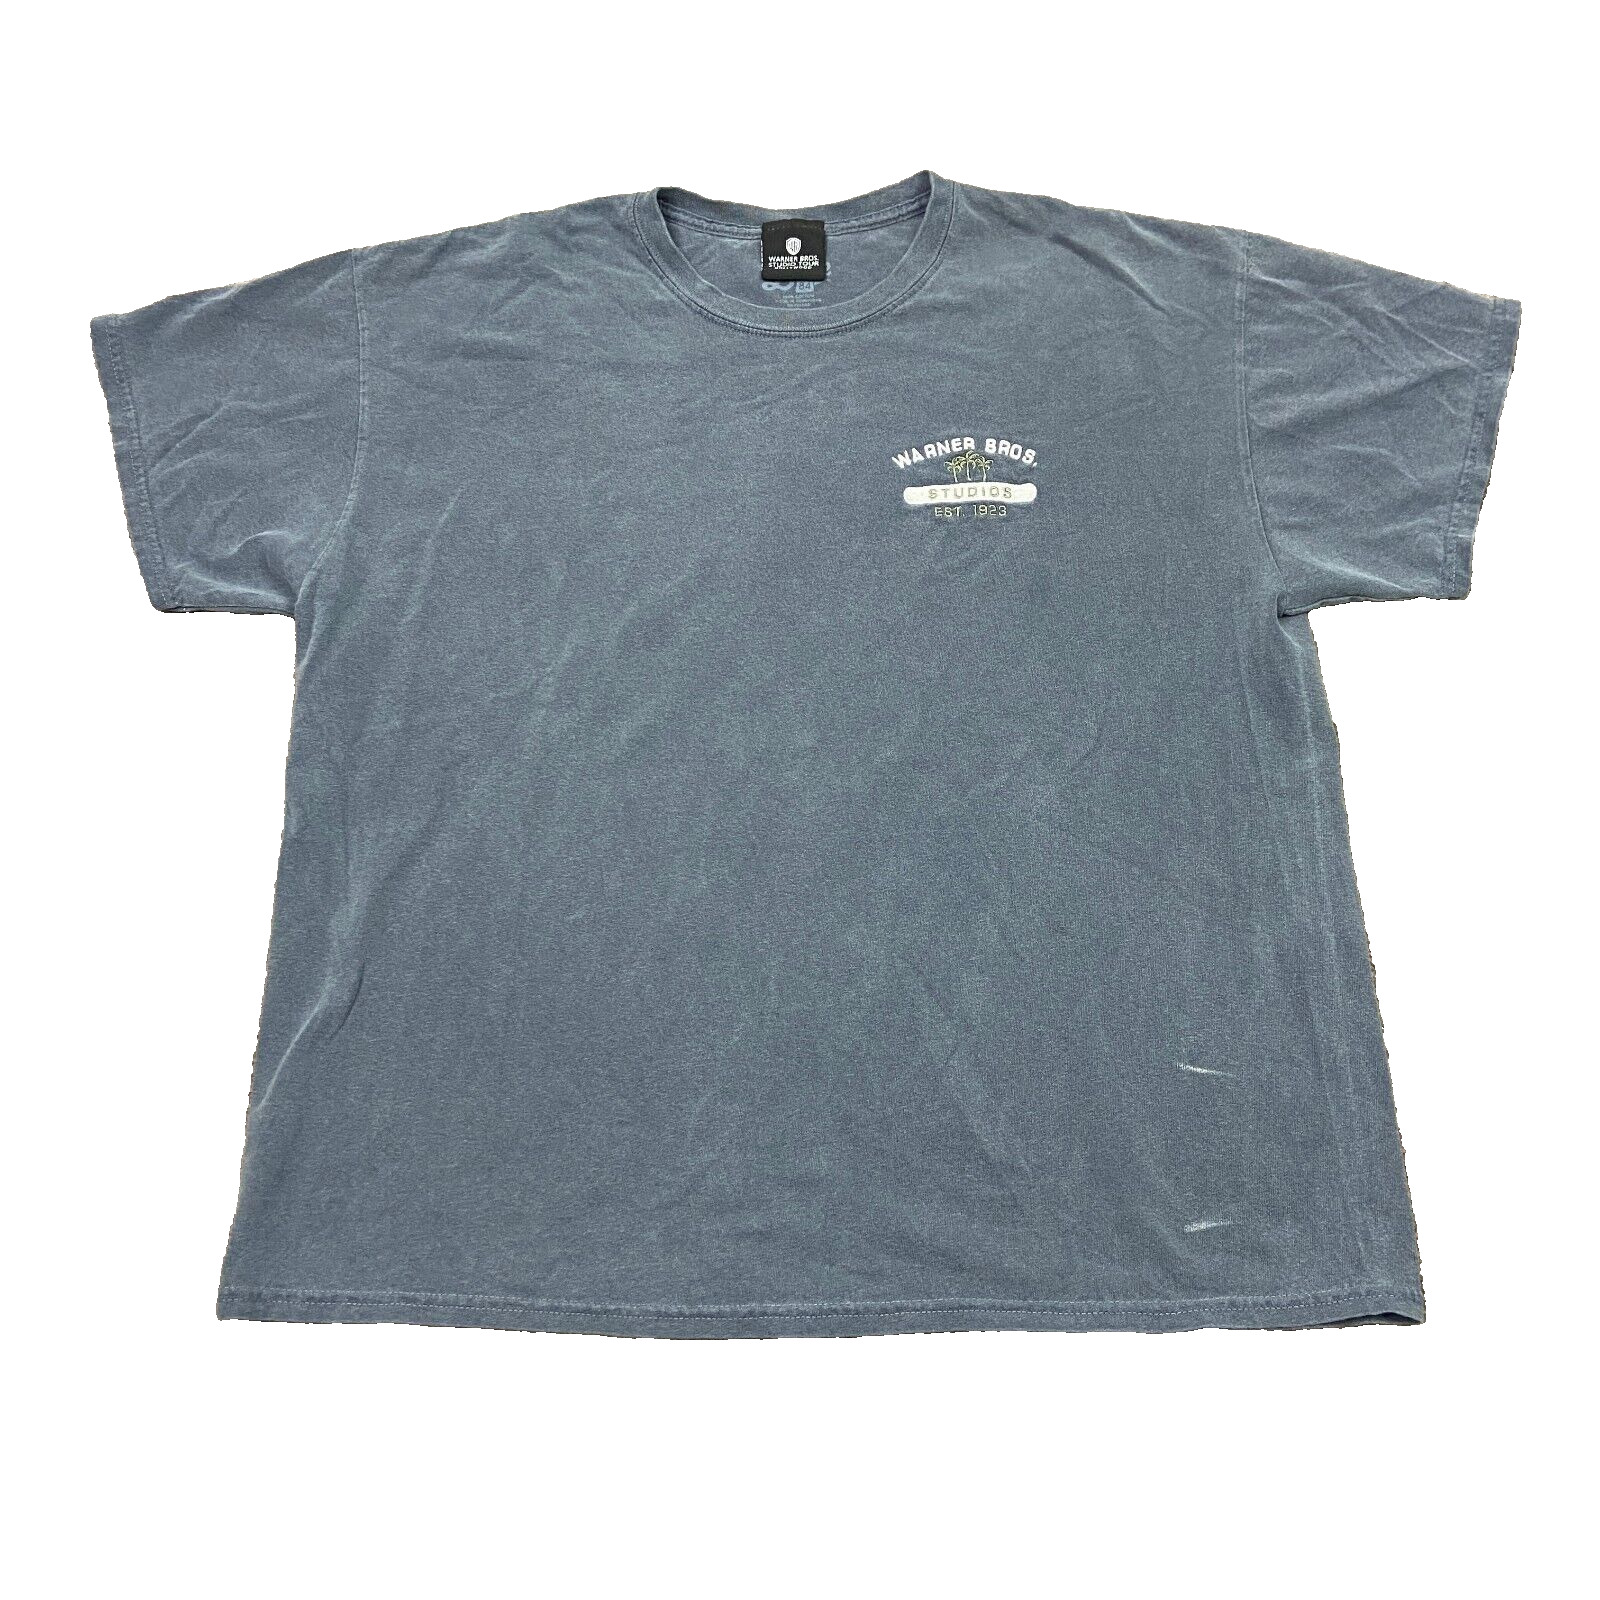 Vintage Warner Bros Studio Tour Embroidered T Shirt Mens XL Blue